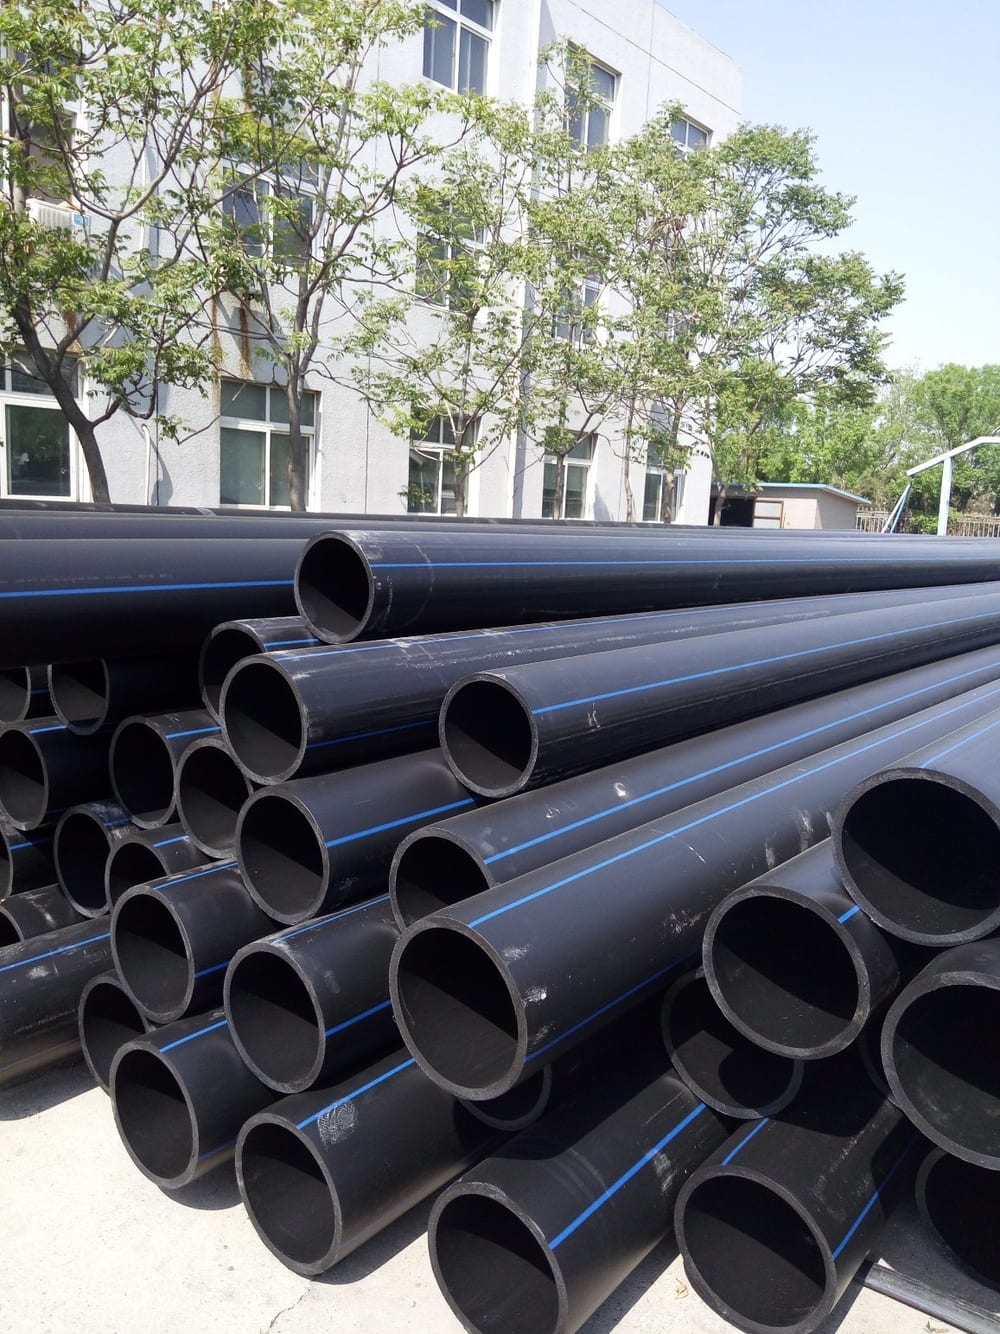 Dịch vụ cung cấp ống nhựa HDPE của Super Trường Phát đảm bảo tiêu chí chất lượng, giá cả cạnh tranh